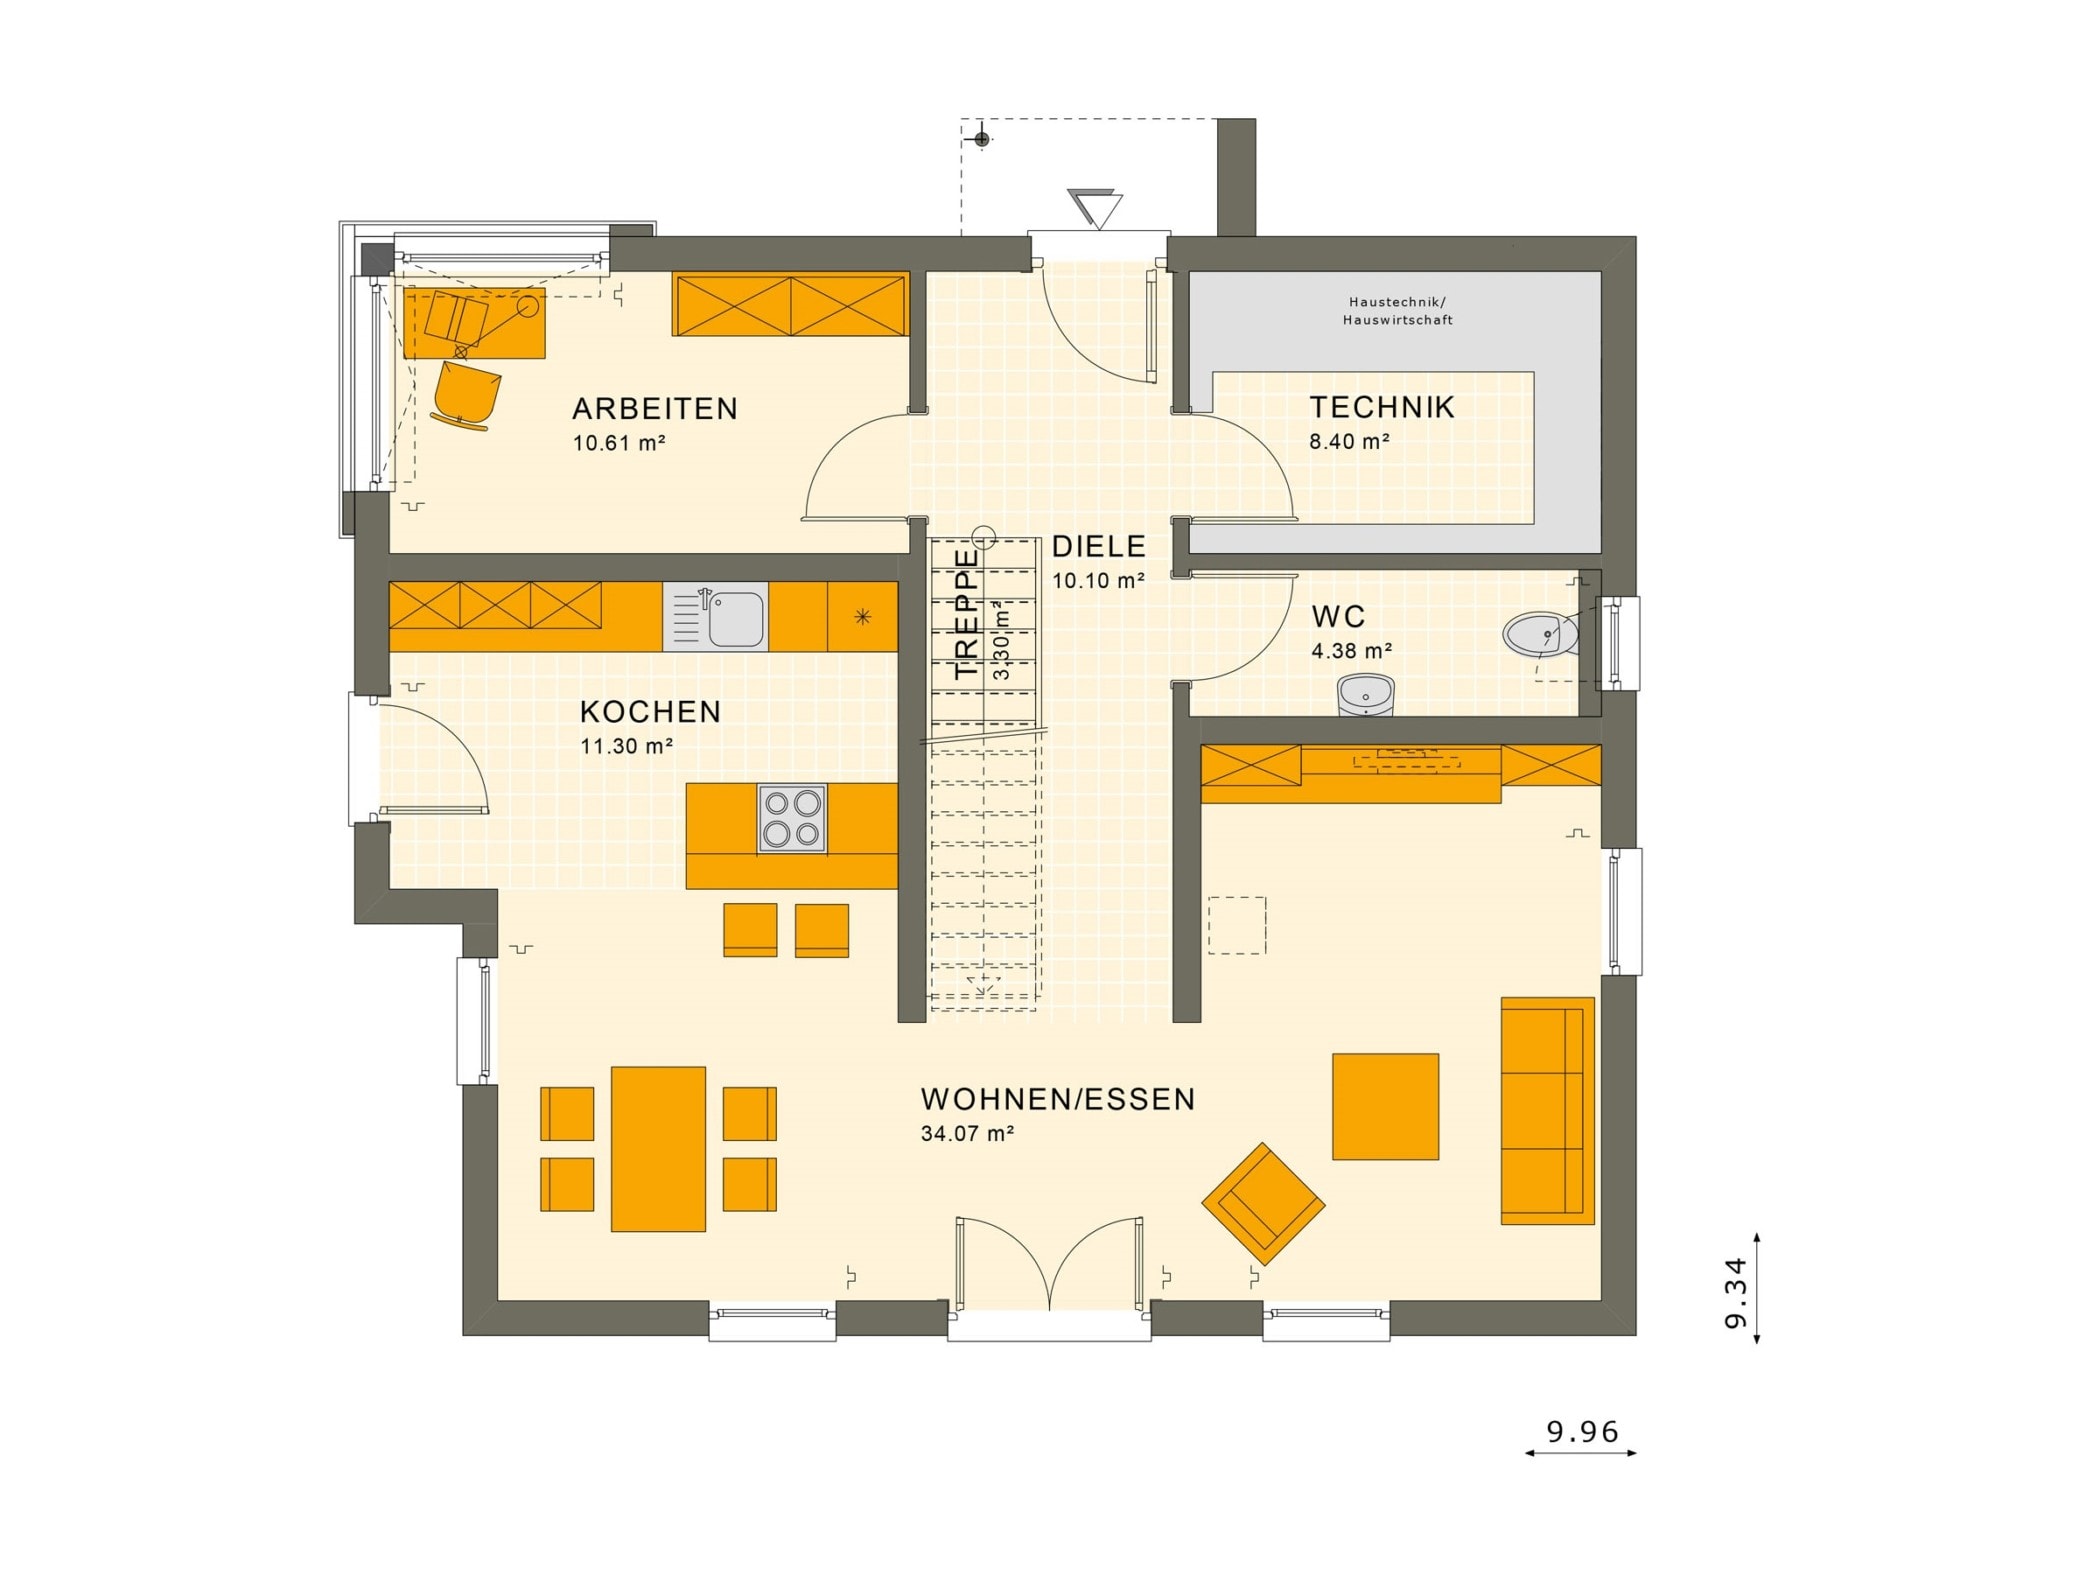 Einfamilienhaus Grundriss Erdgeschoss gerade Treppe mit Galerie, 5 Zimmer, 150 qm - Fertighaus Living Haus SUNSHINE 154 V5 - HausbauDirekt.de